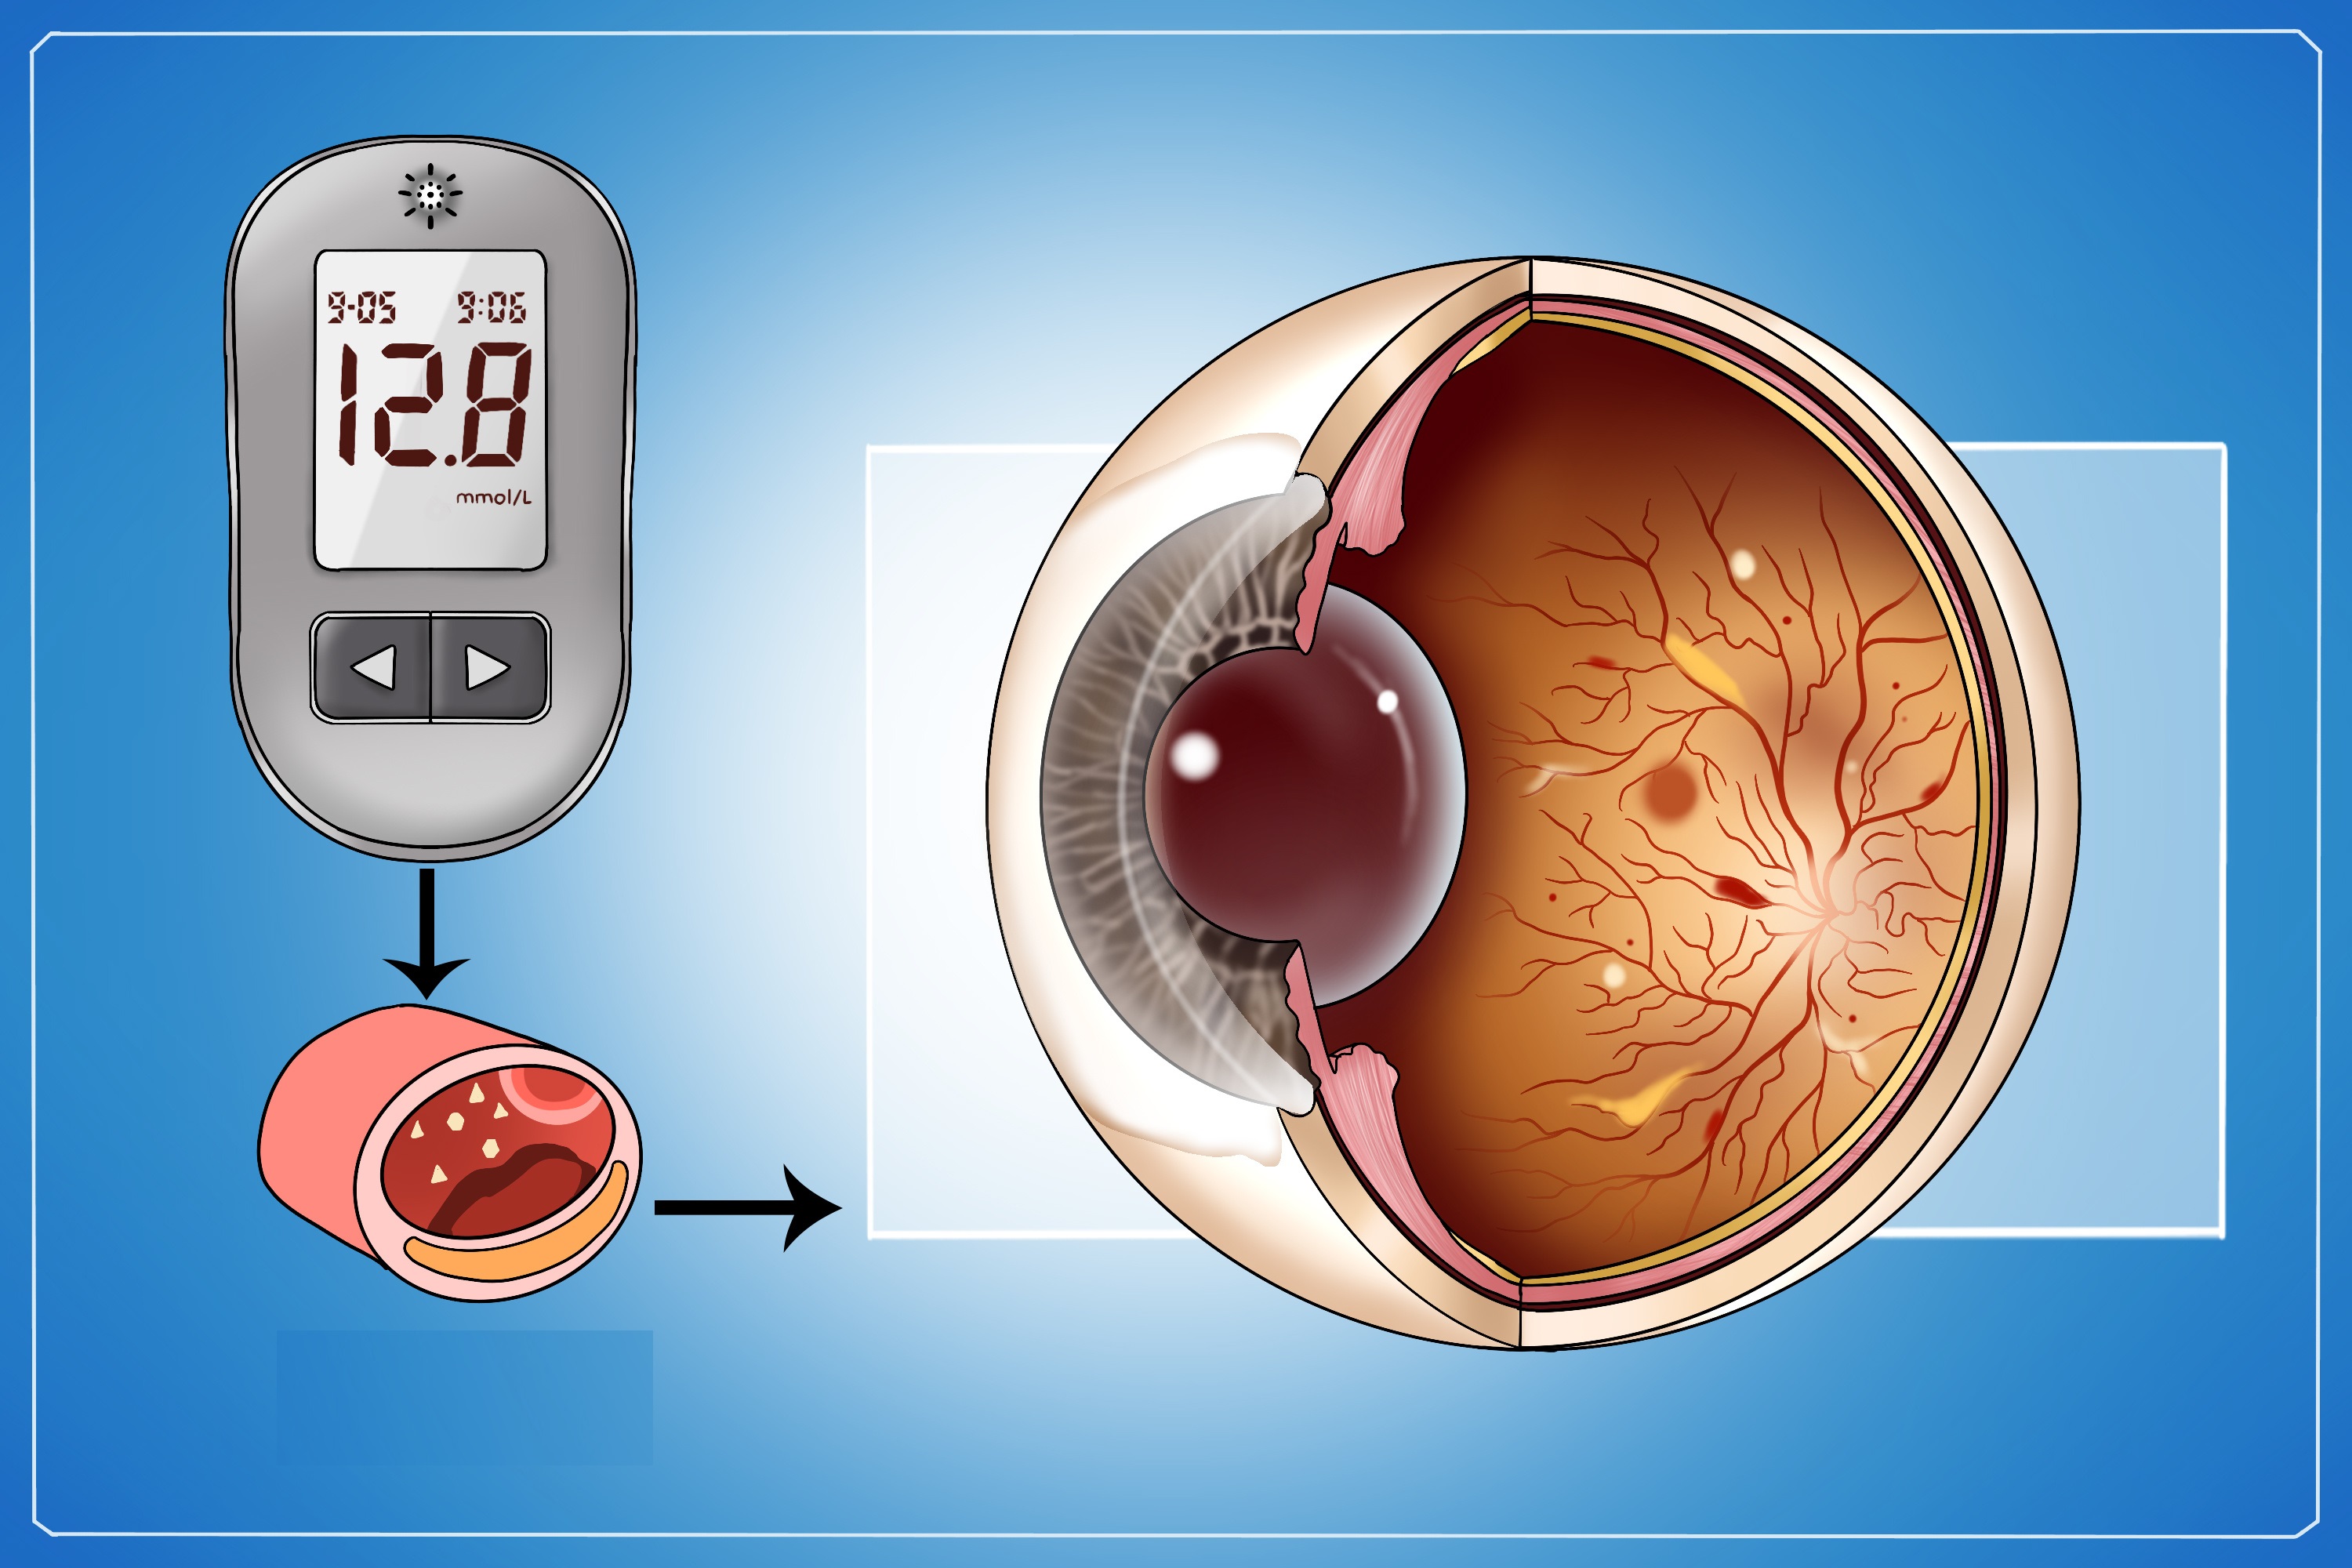 糖尿病视网膜病变是糖尿病常见的眼部并发症